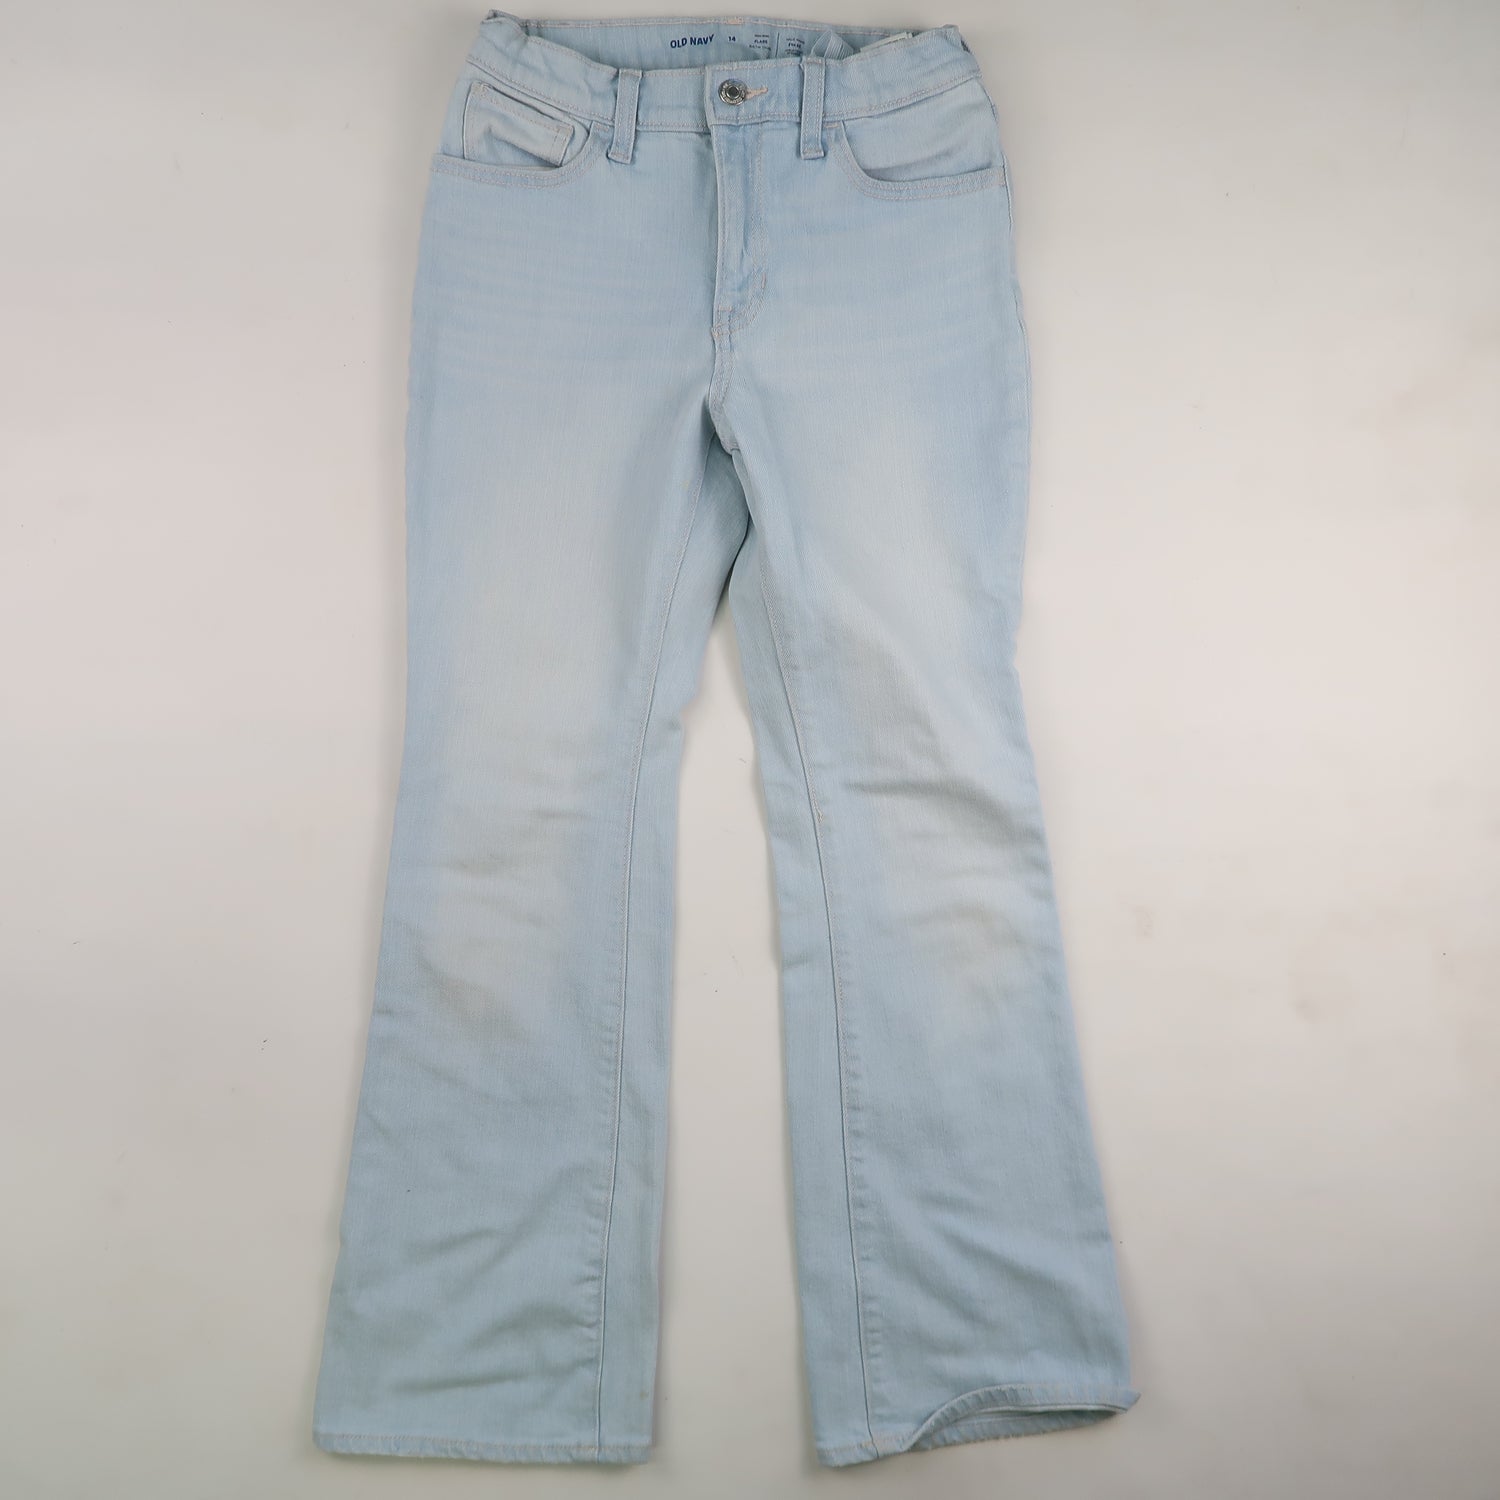 Old Navy - Pants (14Y)